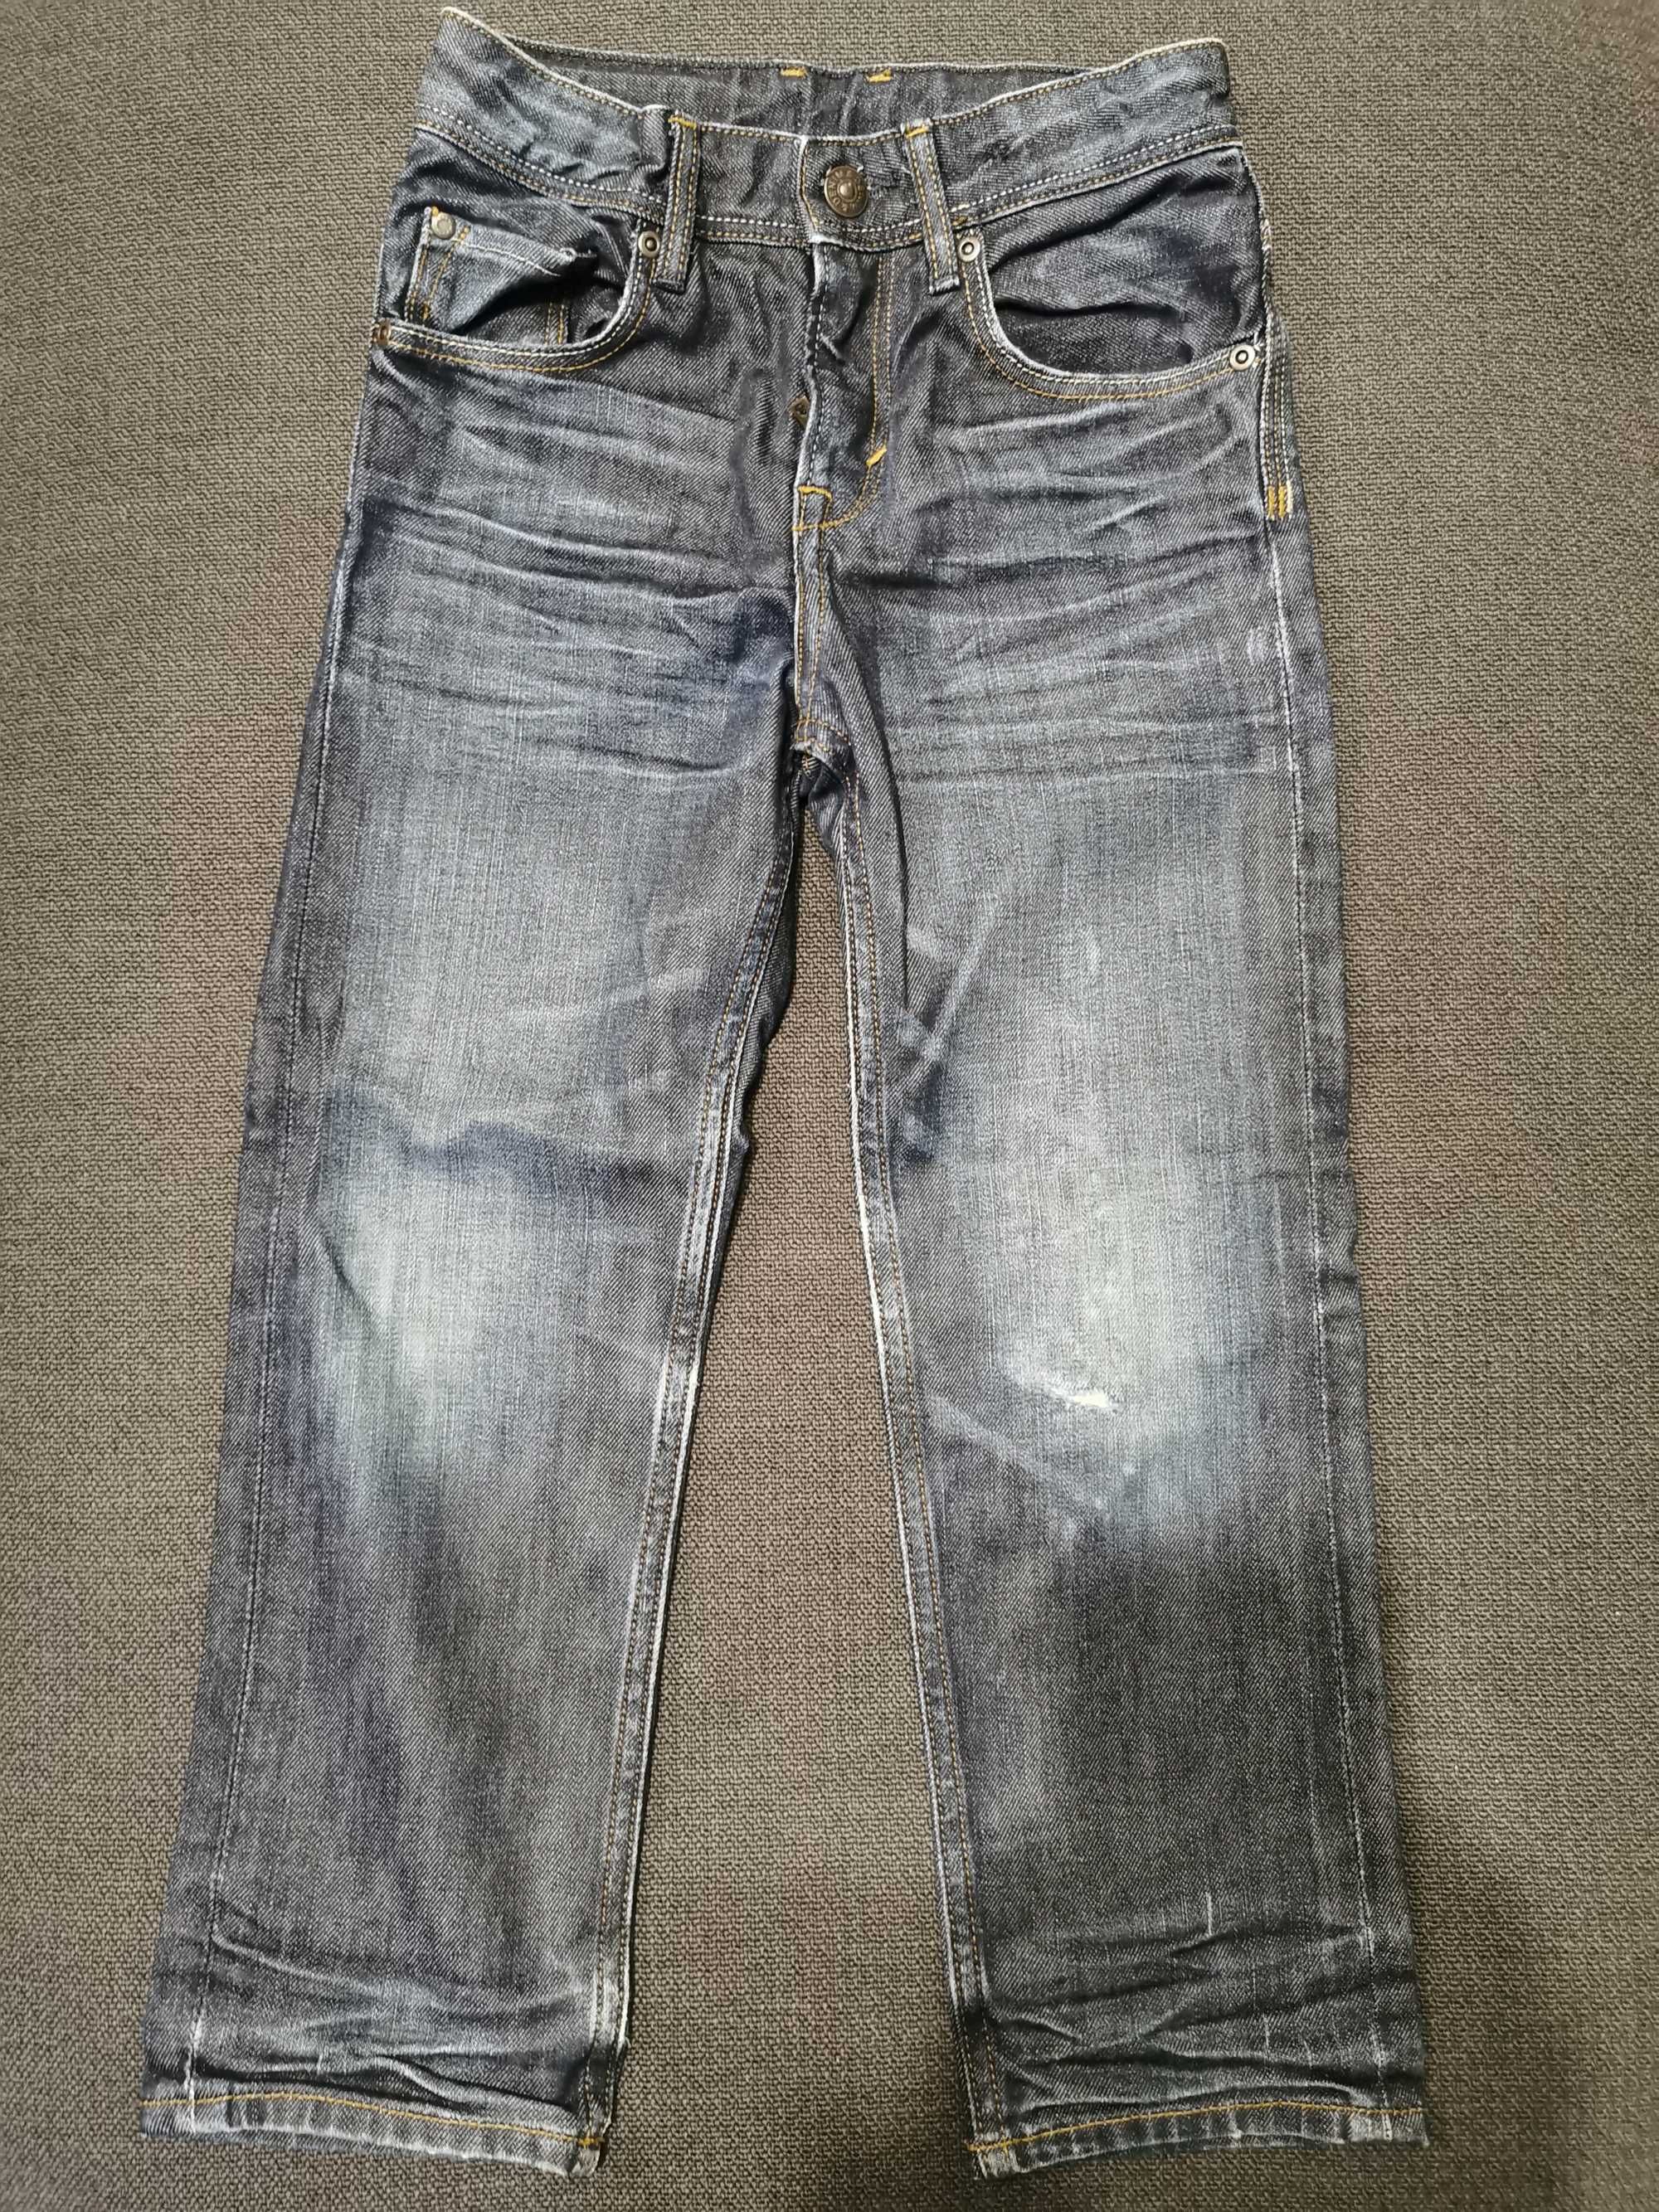 Spodnie chłopięce jeansowe rozmiar 116, H&M